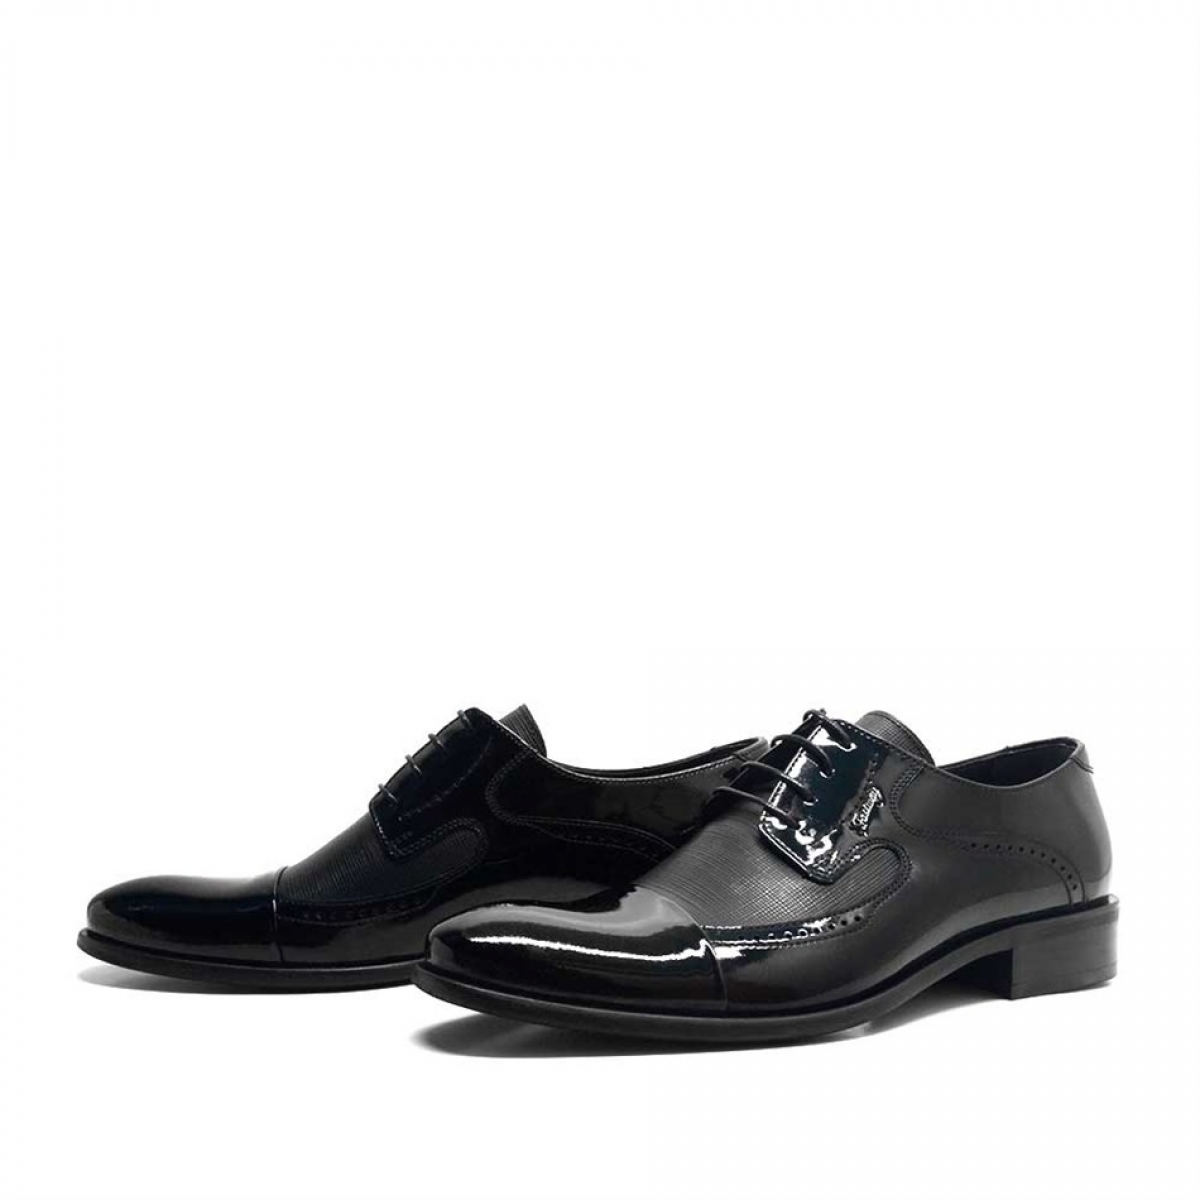 Flo Hakiki Deri Siyah Rugan Bağcıklı Klasik Erkek Ayakkabı. 1